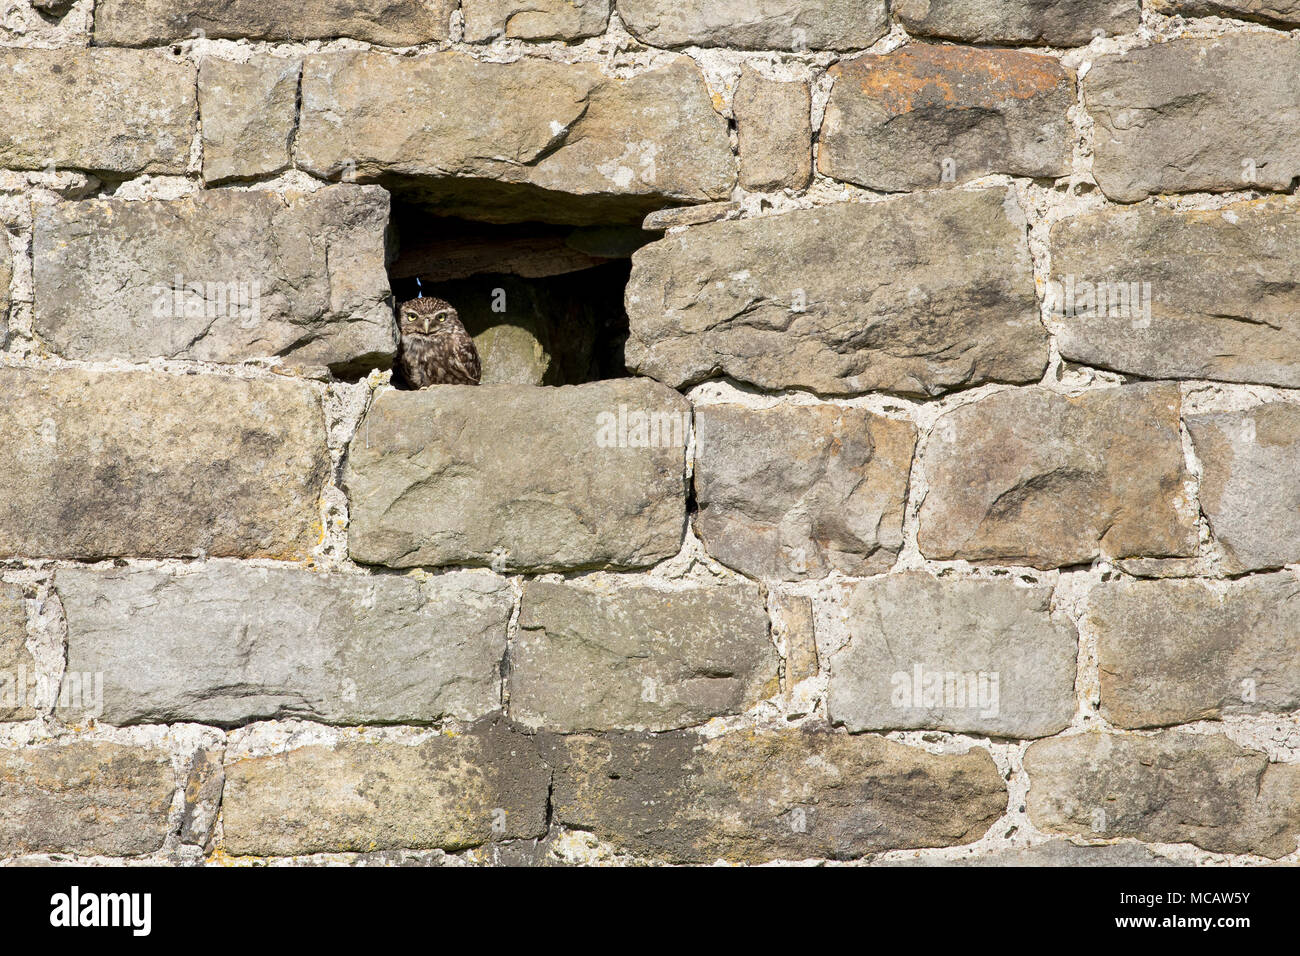 Un pequeño búho se posa en la ventana de un antiguo granero de ladrillo. Foto de stock